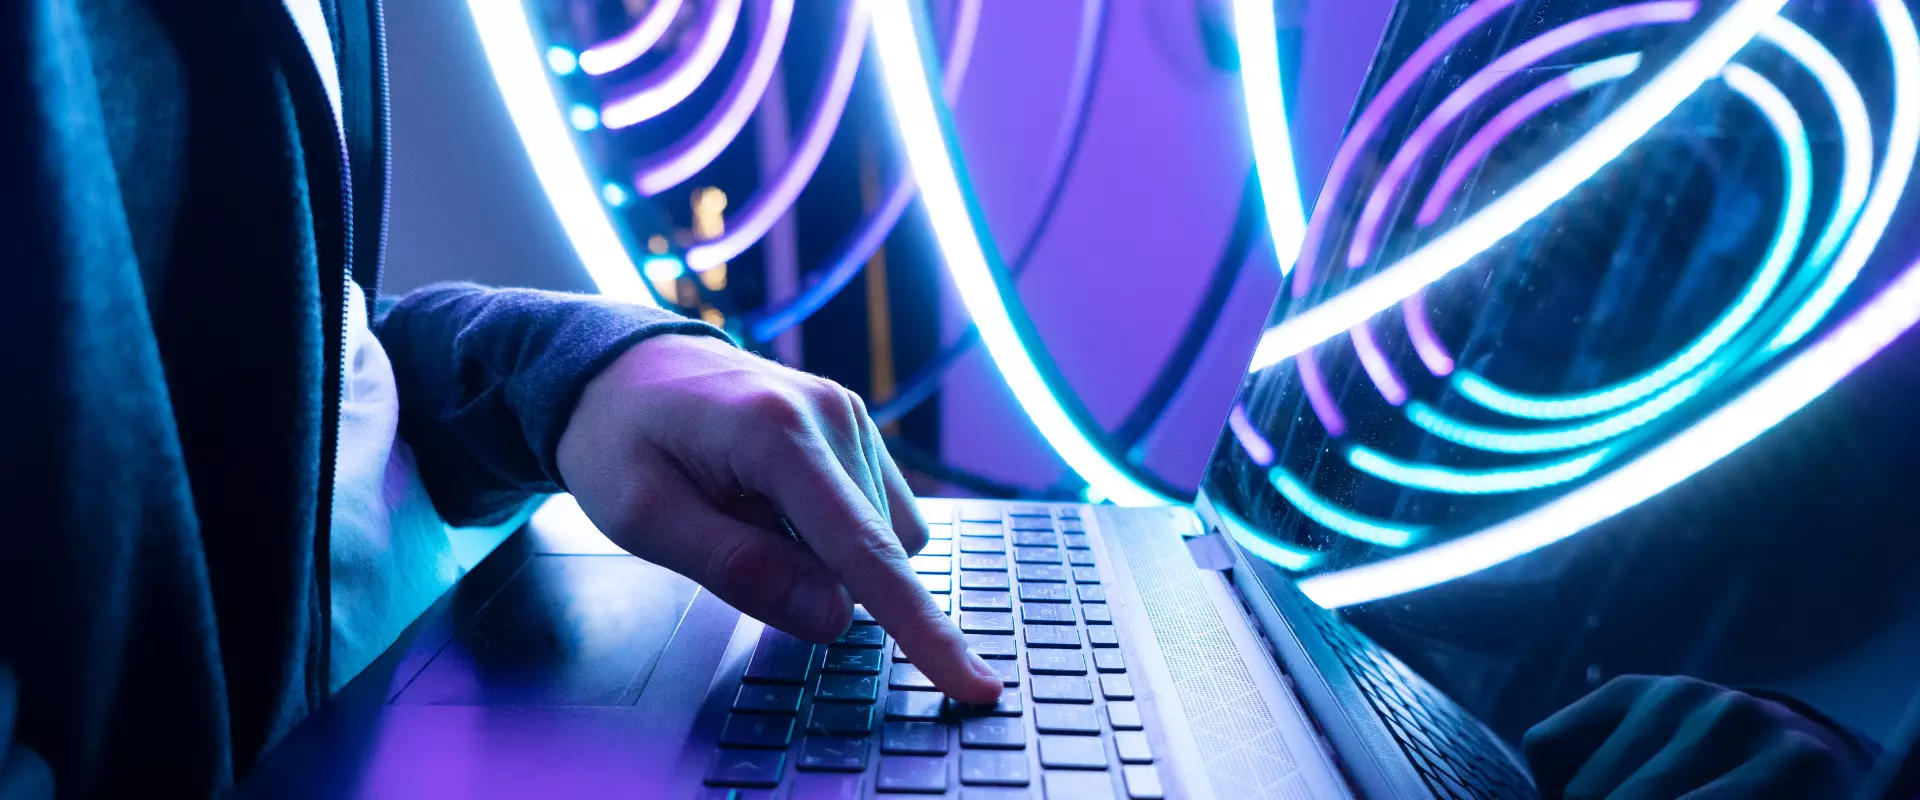 Eine Person, die eine Tastatur mit leuchtend blauer und violetter LED-Beleuchtung im Hintergrund verwendet.